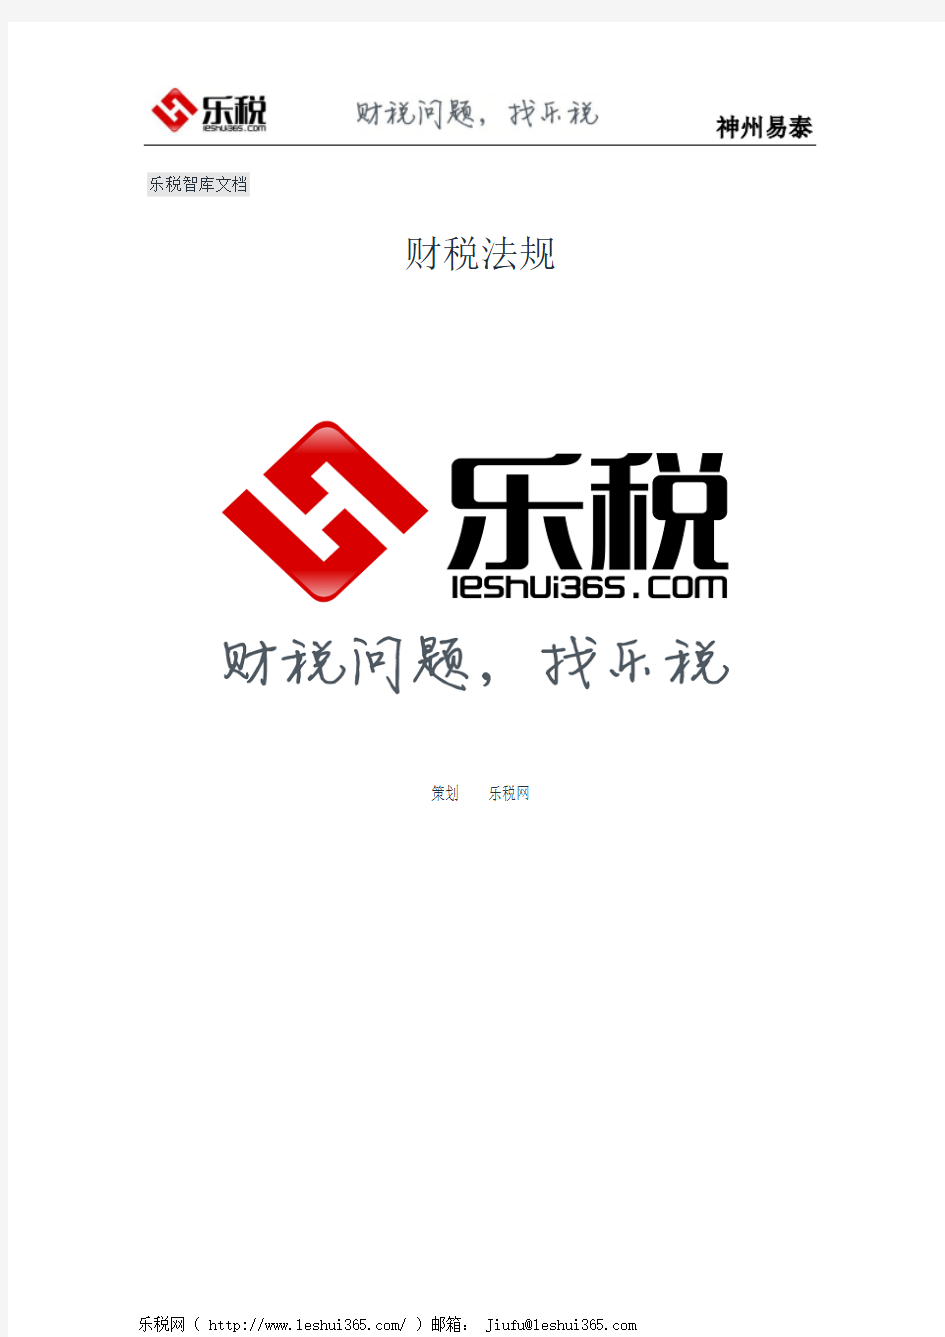 河南省国家税务局关于出口退税远程申报系统和企业端退税申报系统